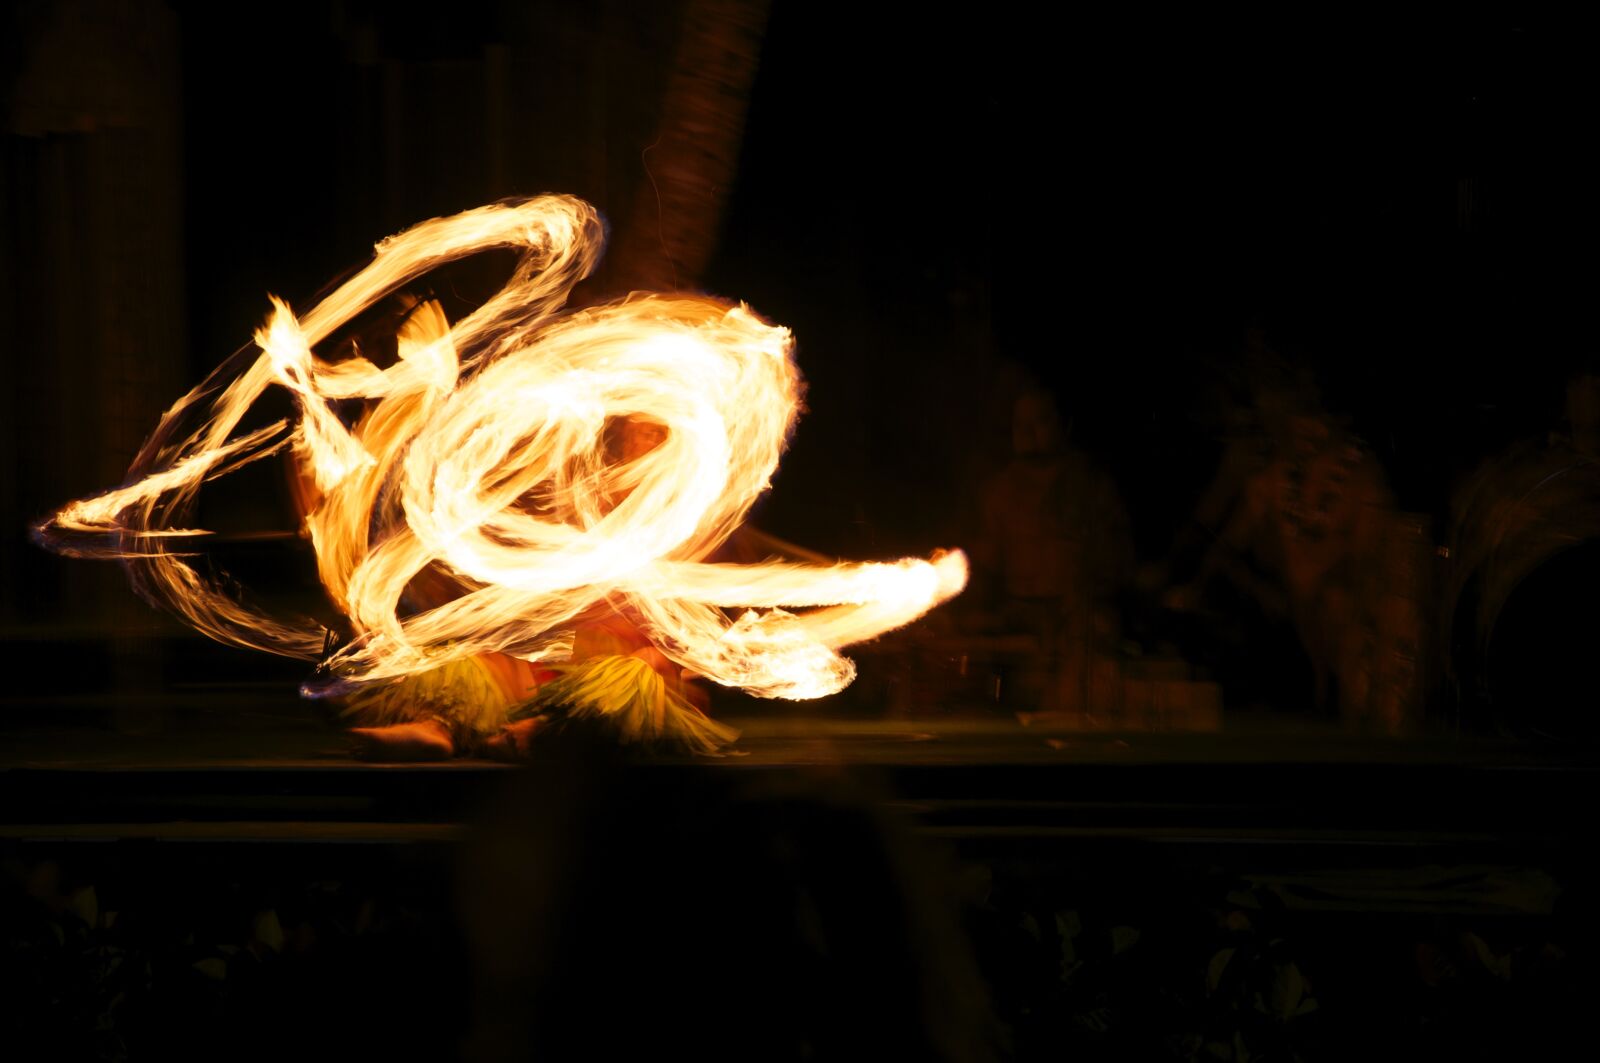 Nikon D90 sample photo. Fire, hawaii, juggler photography